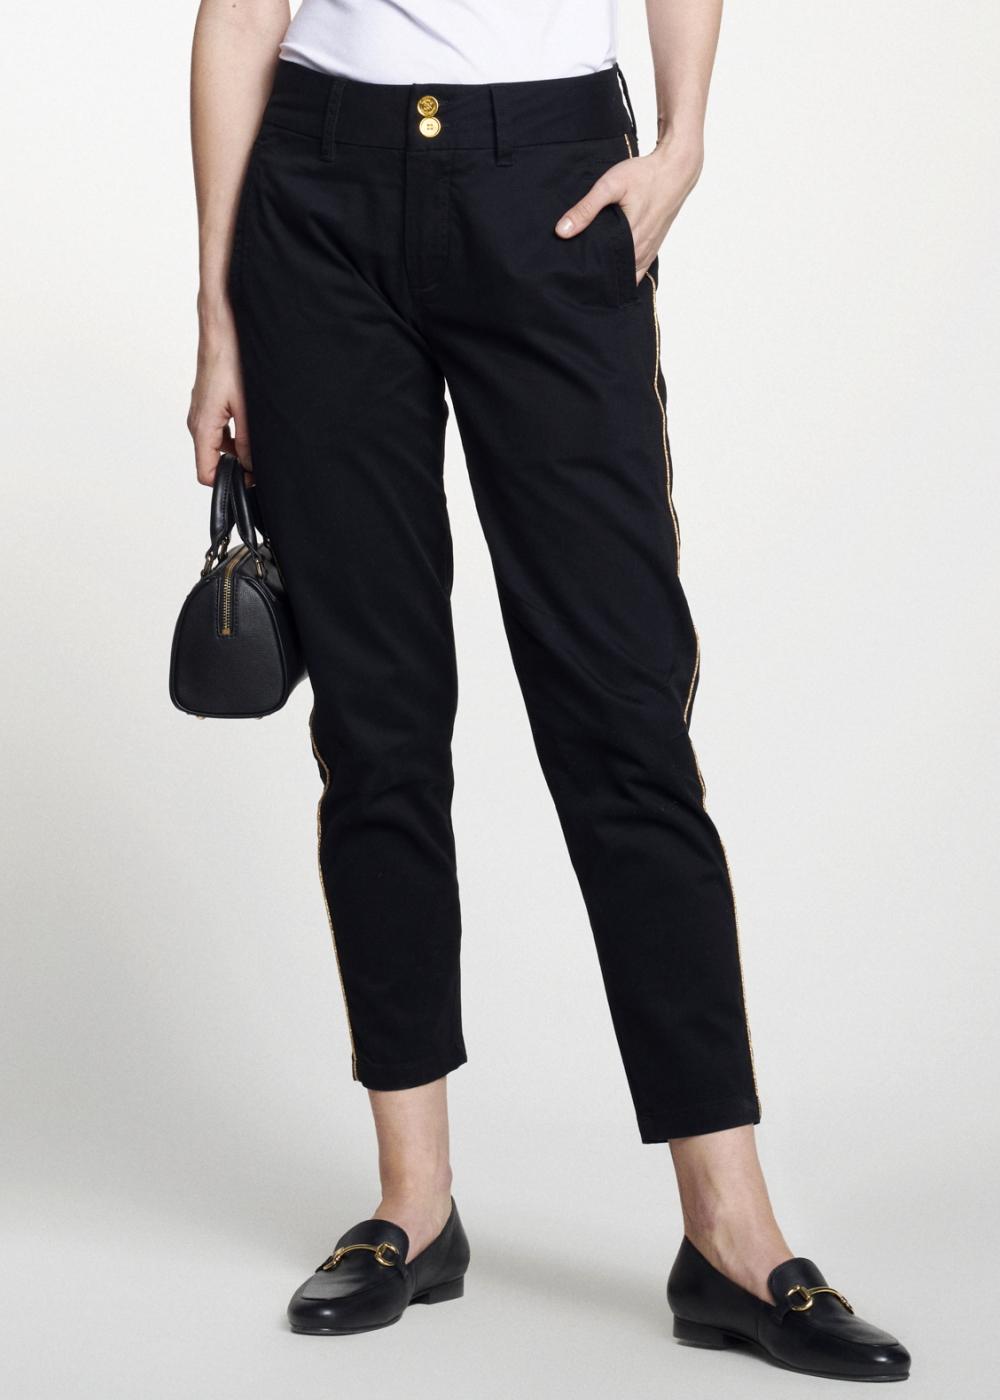 Czarne spodnie damskie z lampasem SPODT-0056-99(W21)